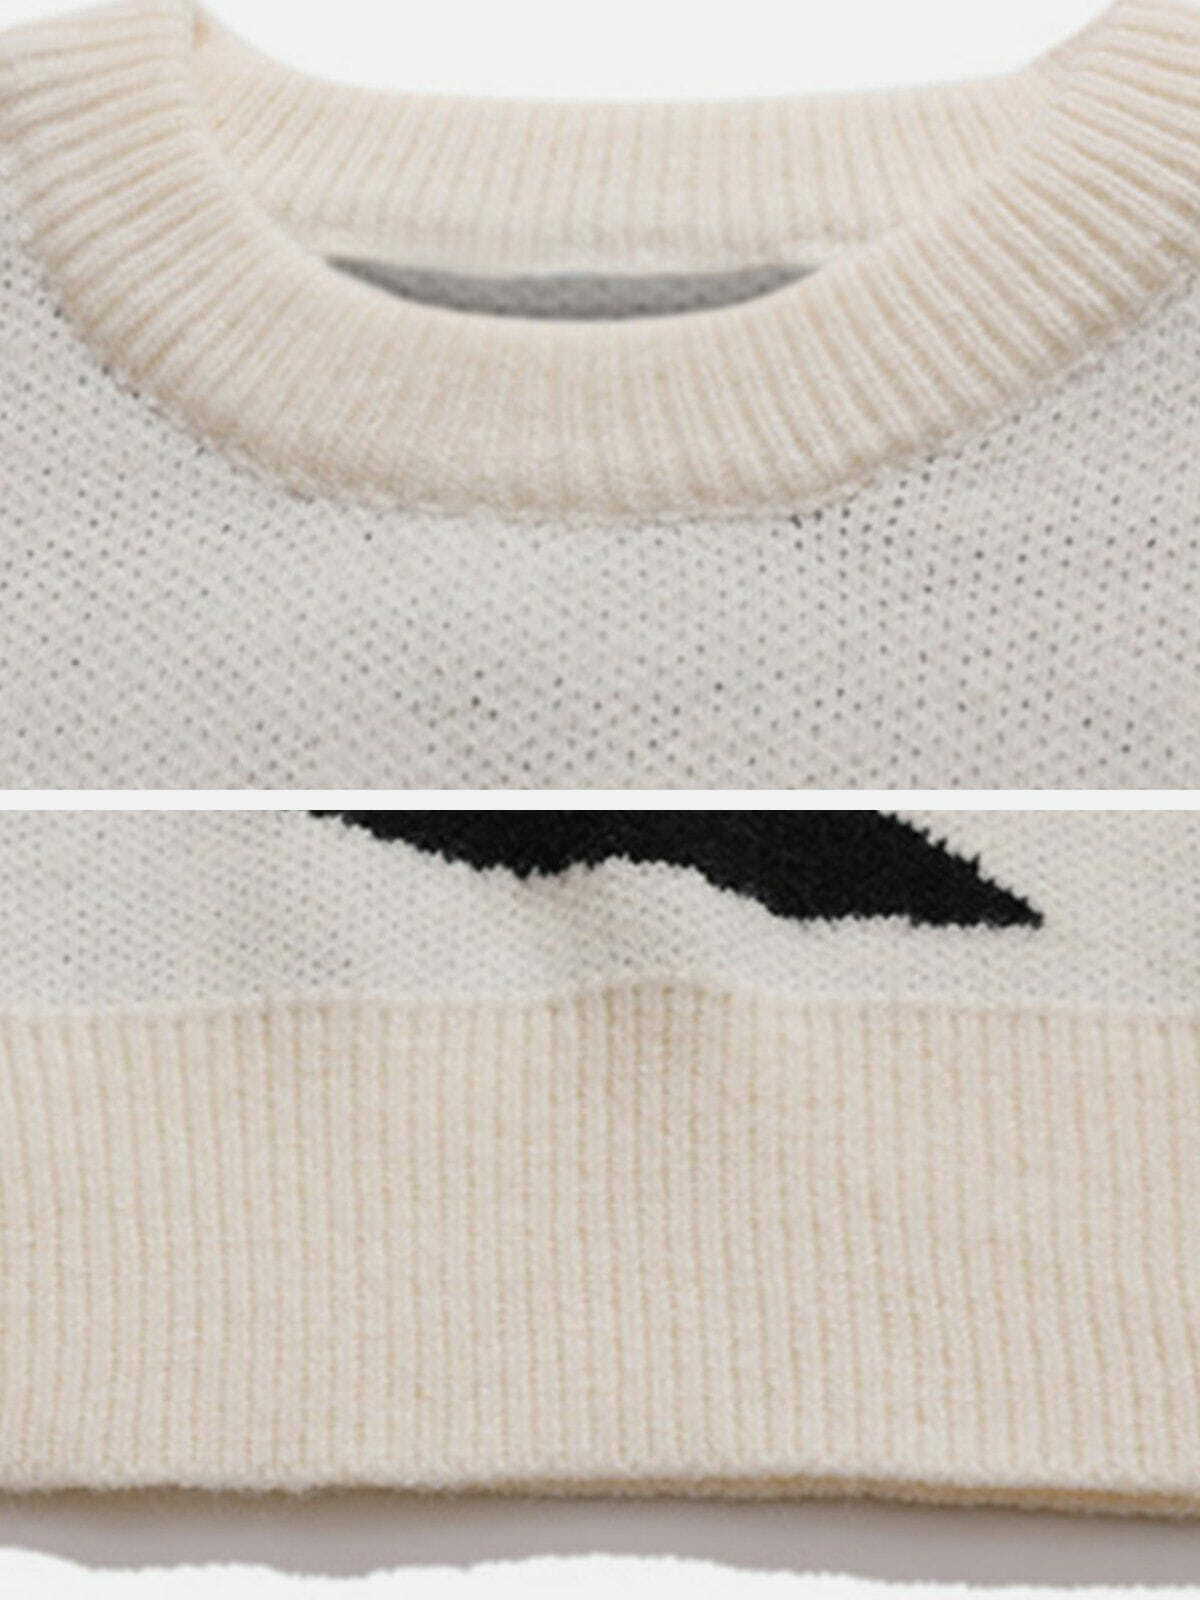 star pattern sweater retro knitwear charm 1001